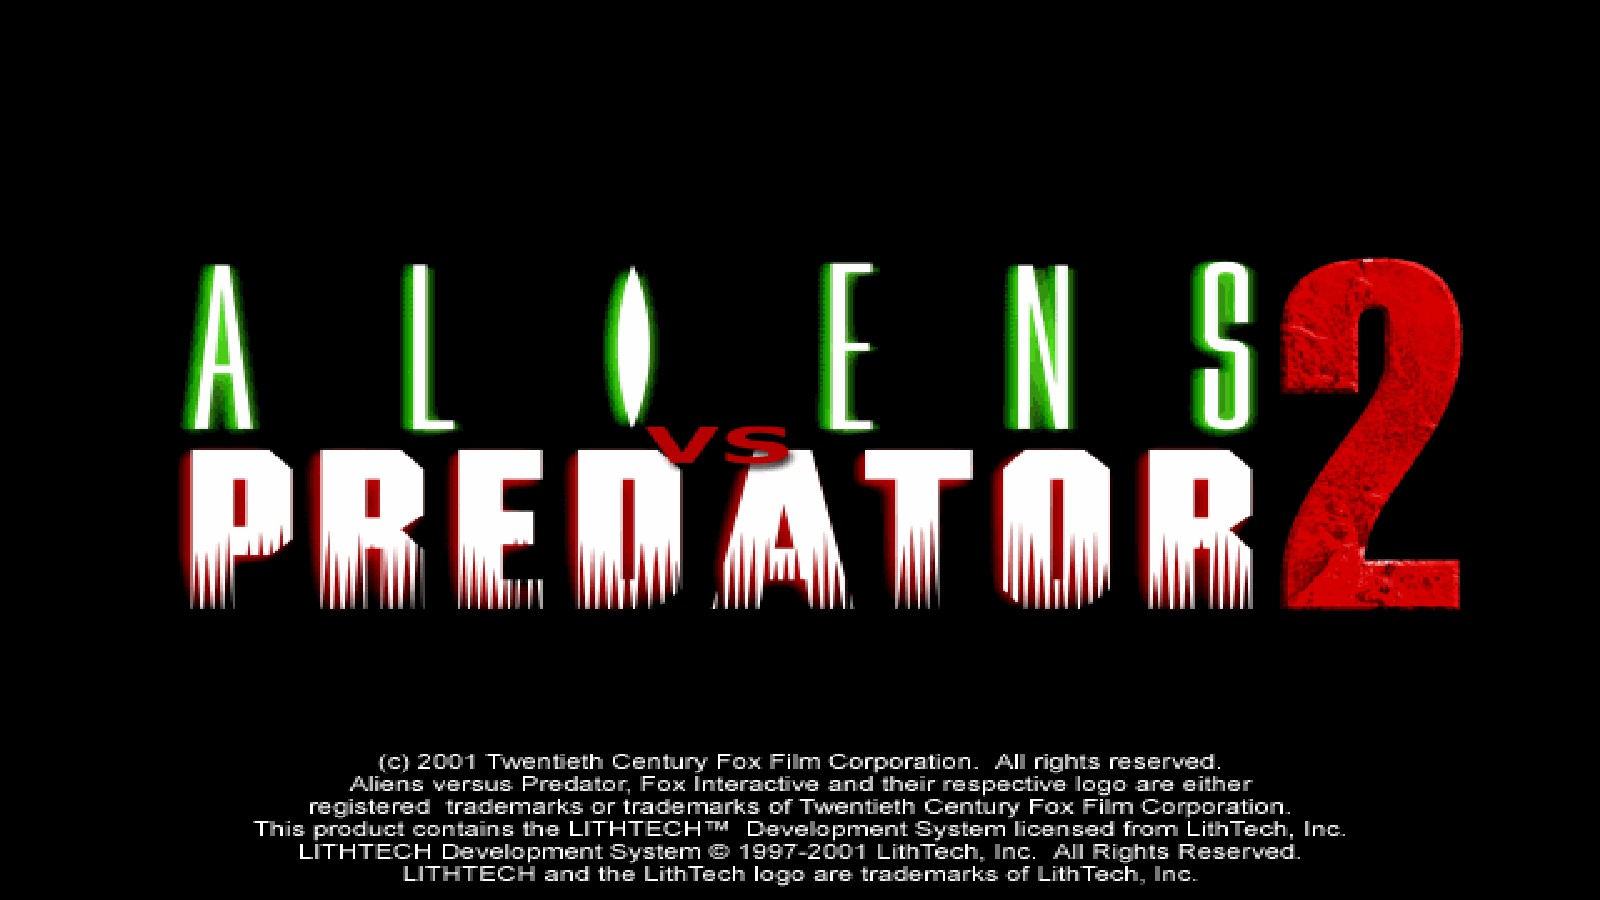 AvP 2 Demo file - Aliens vs. Predator 2 - ModDB